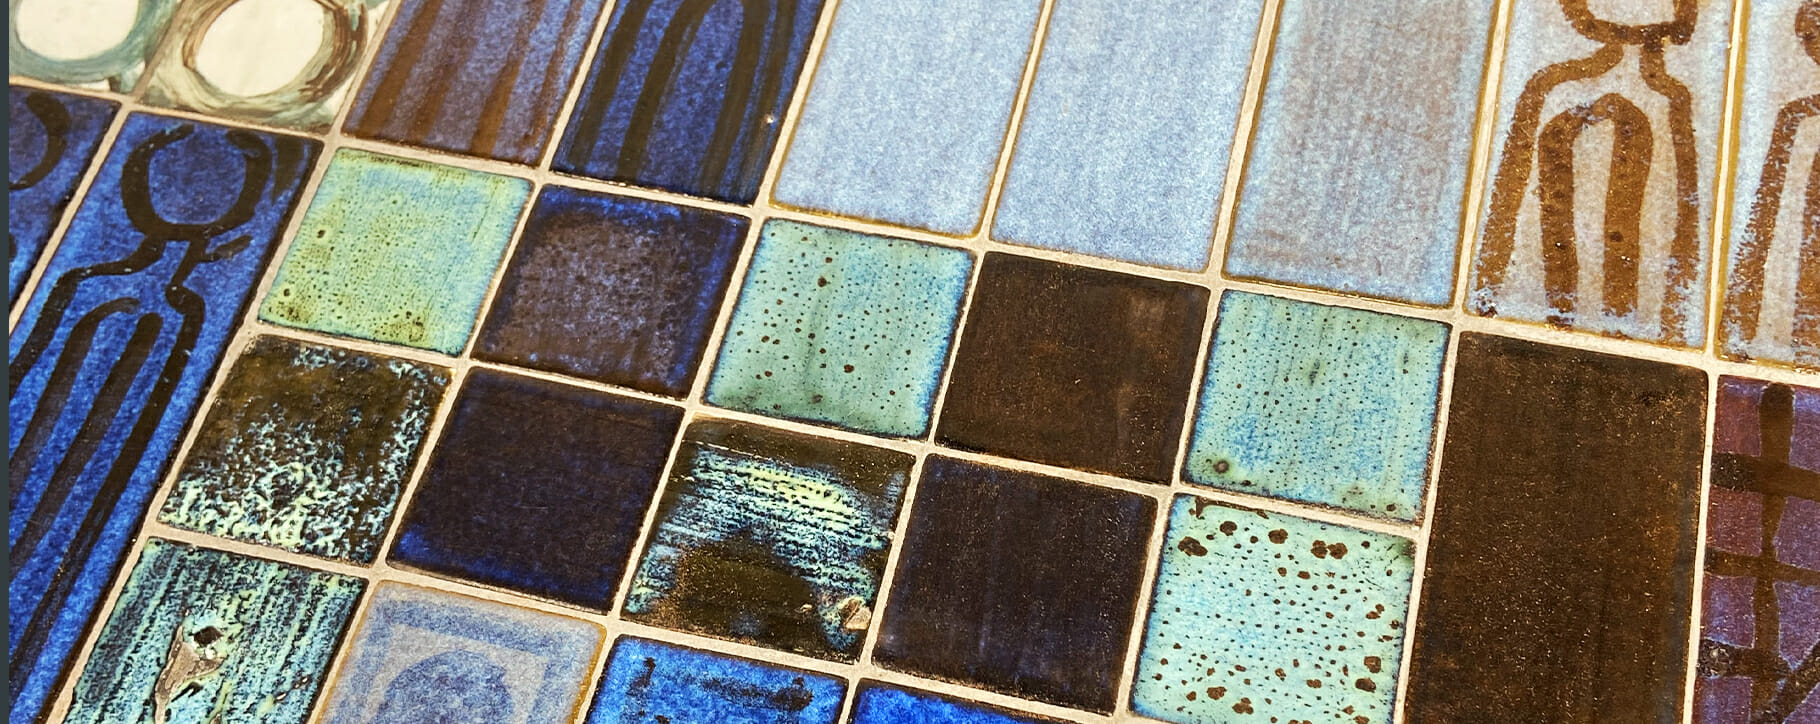 Tile close up